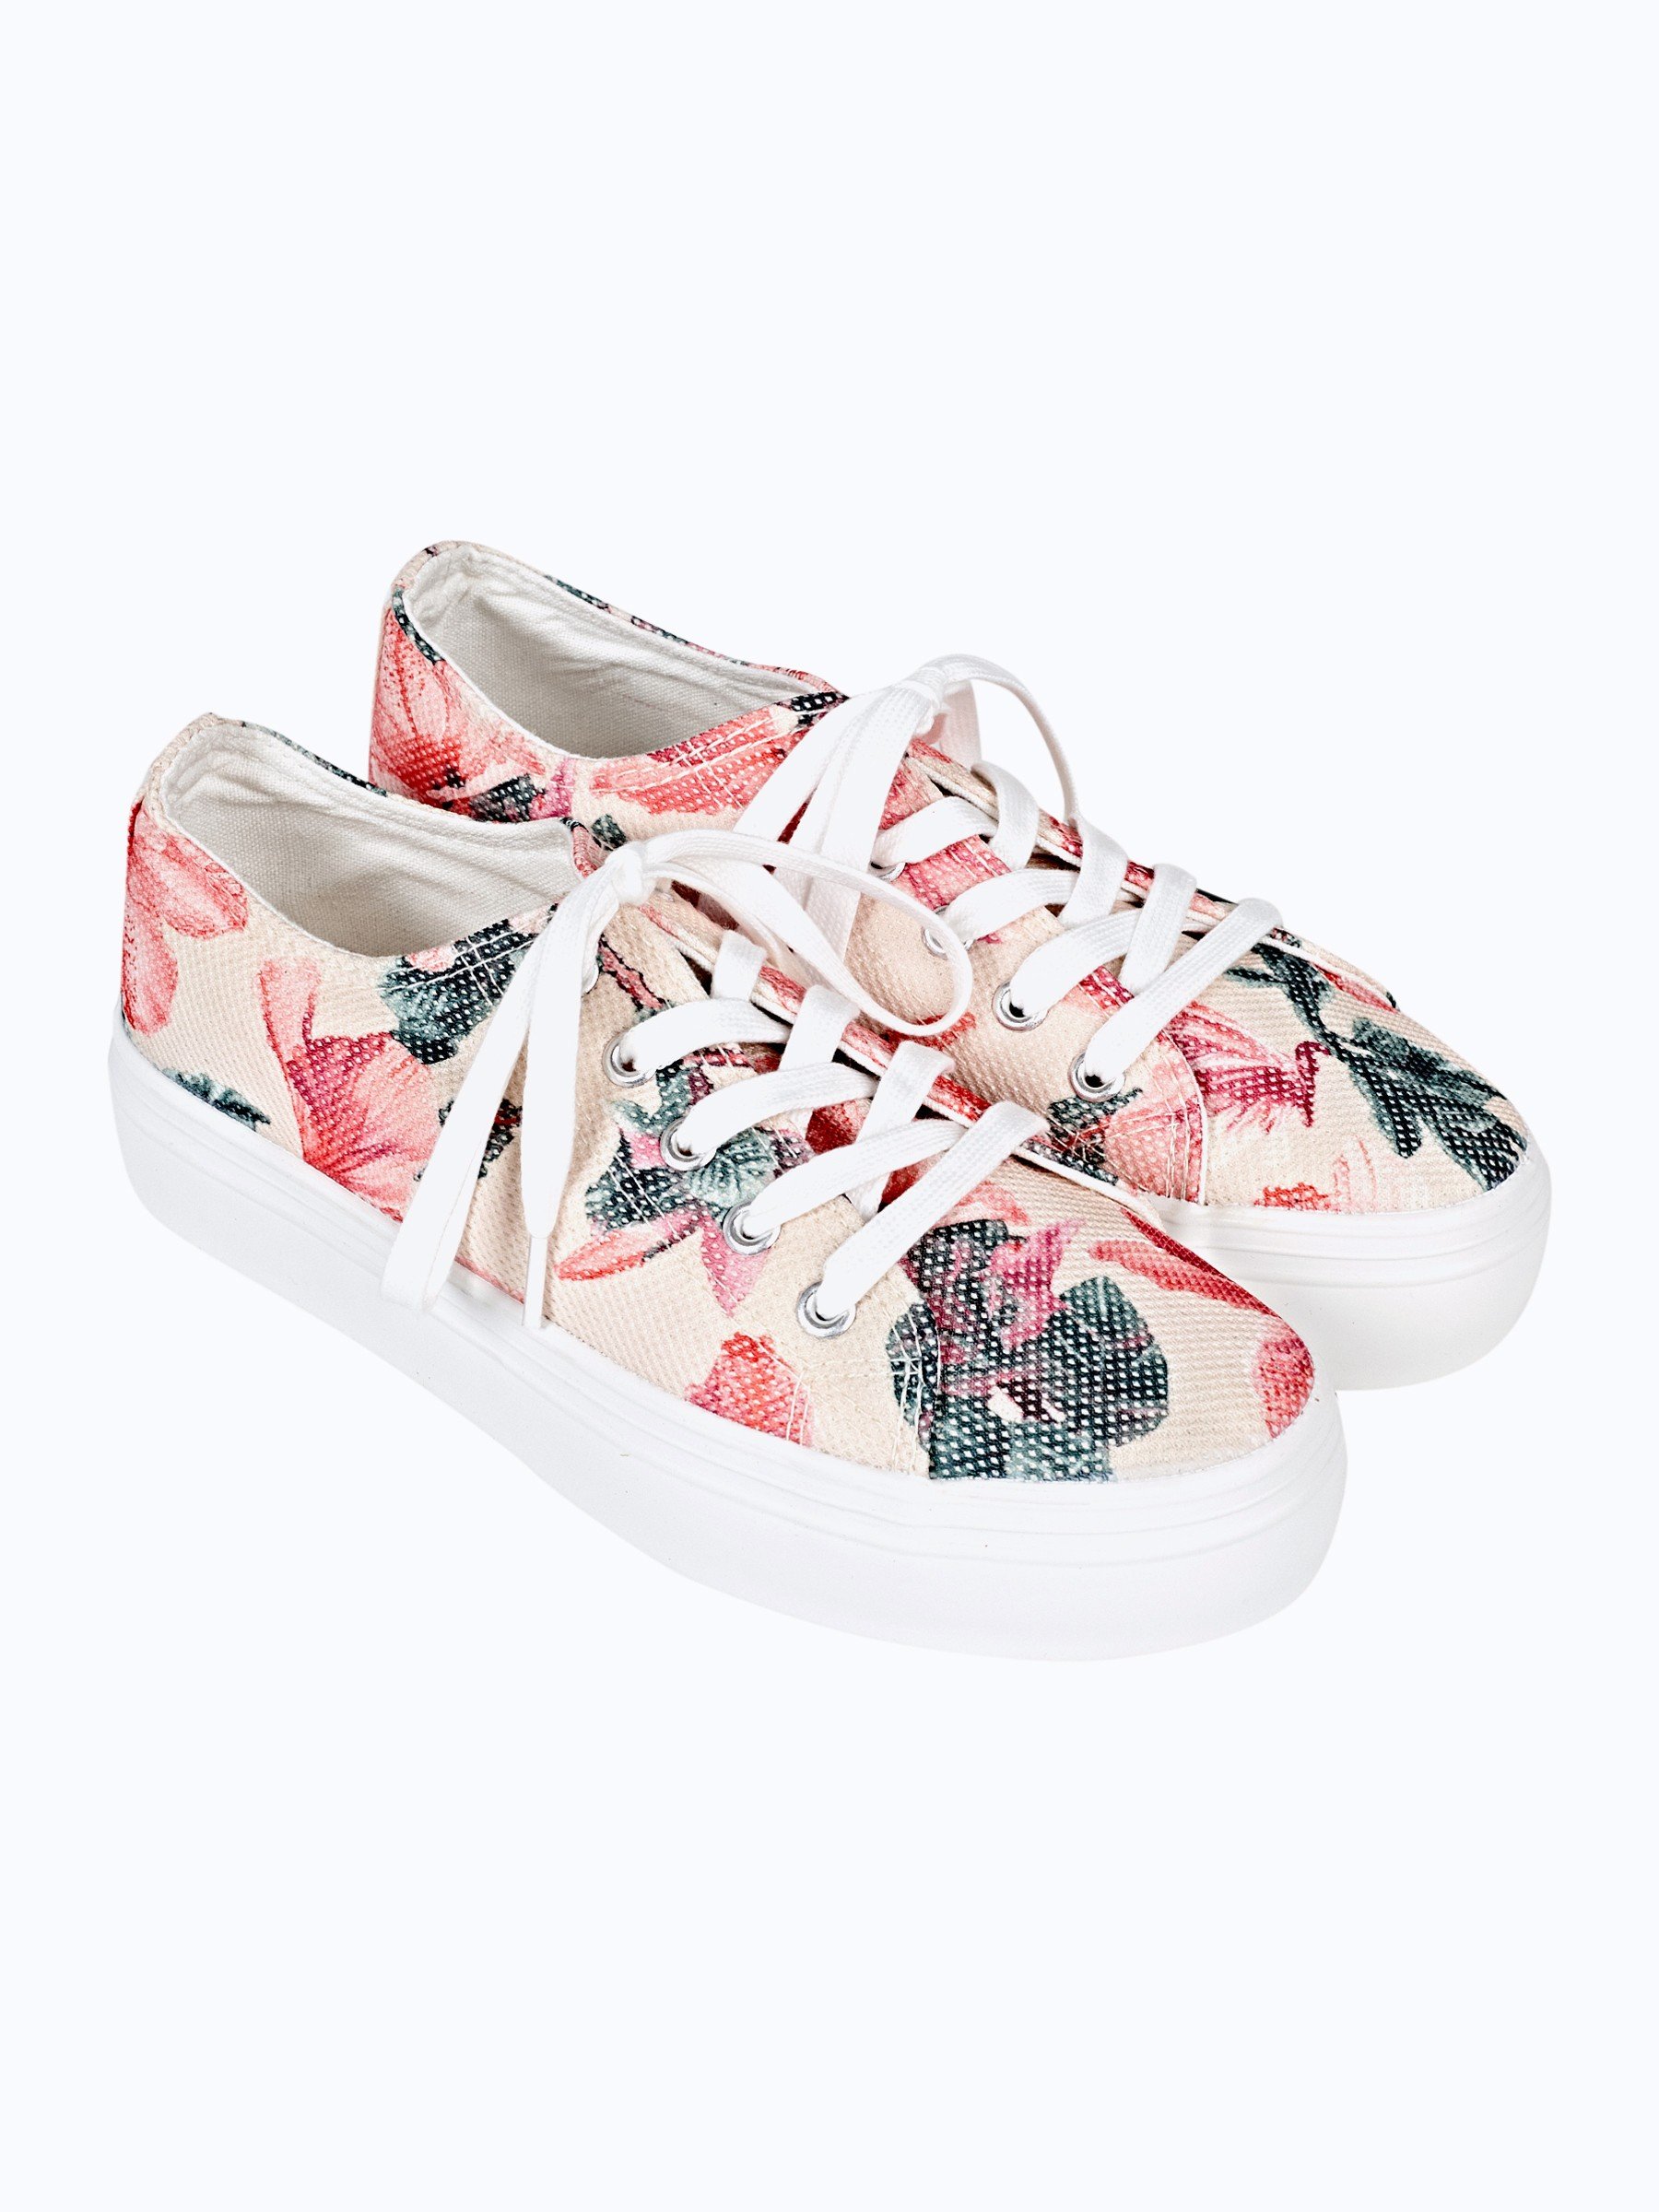 floral platform sneakers